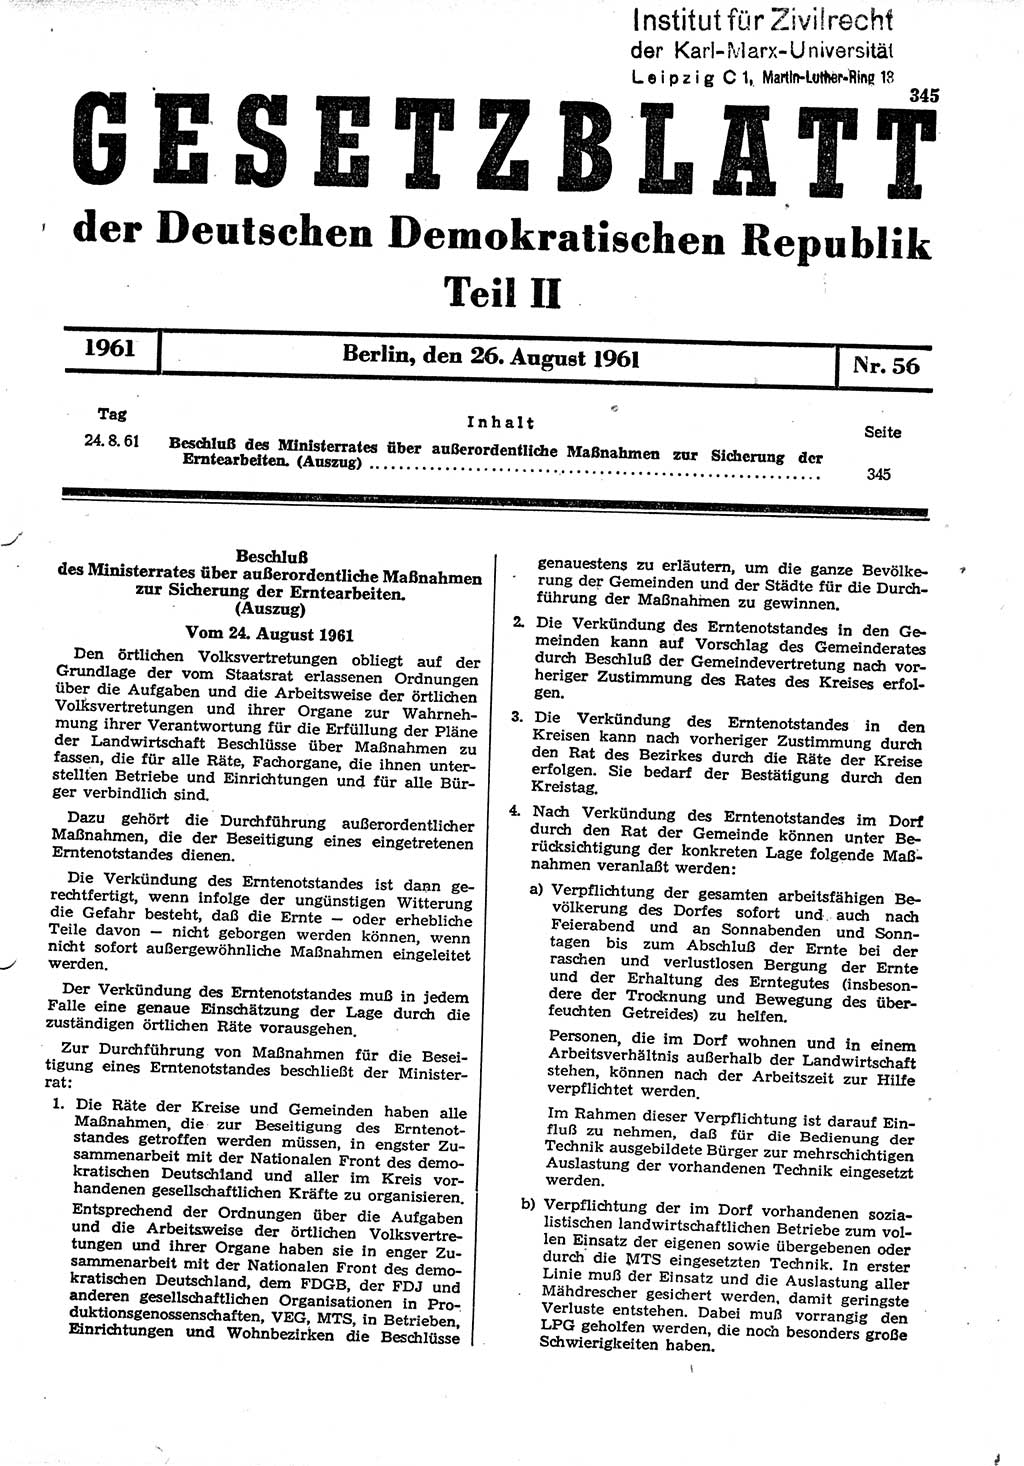 Gesetzblatt (GBl.) der Deutschen Demokratischen Republik (DDR) Teil ⅠⅠ 1961, Seite 345 (GBl. DDR ⅠⅠ 1961, S. 345)